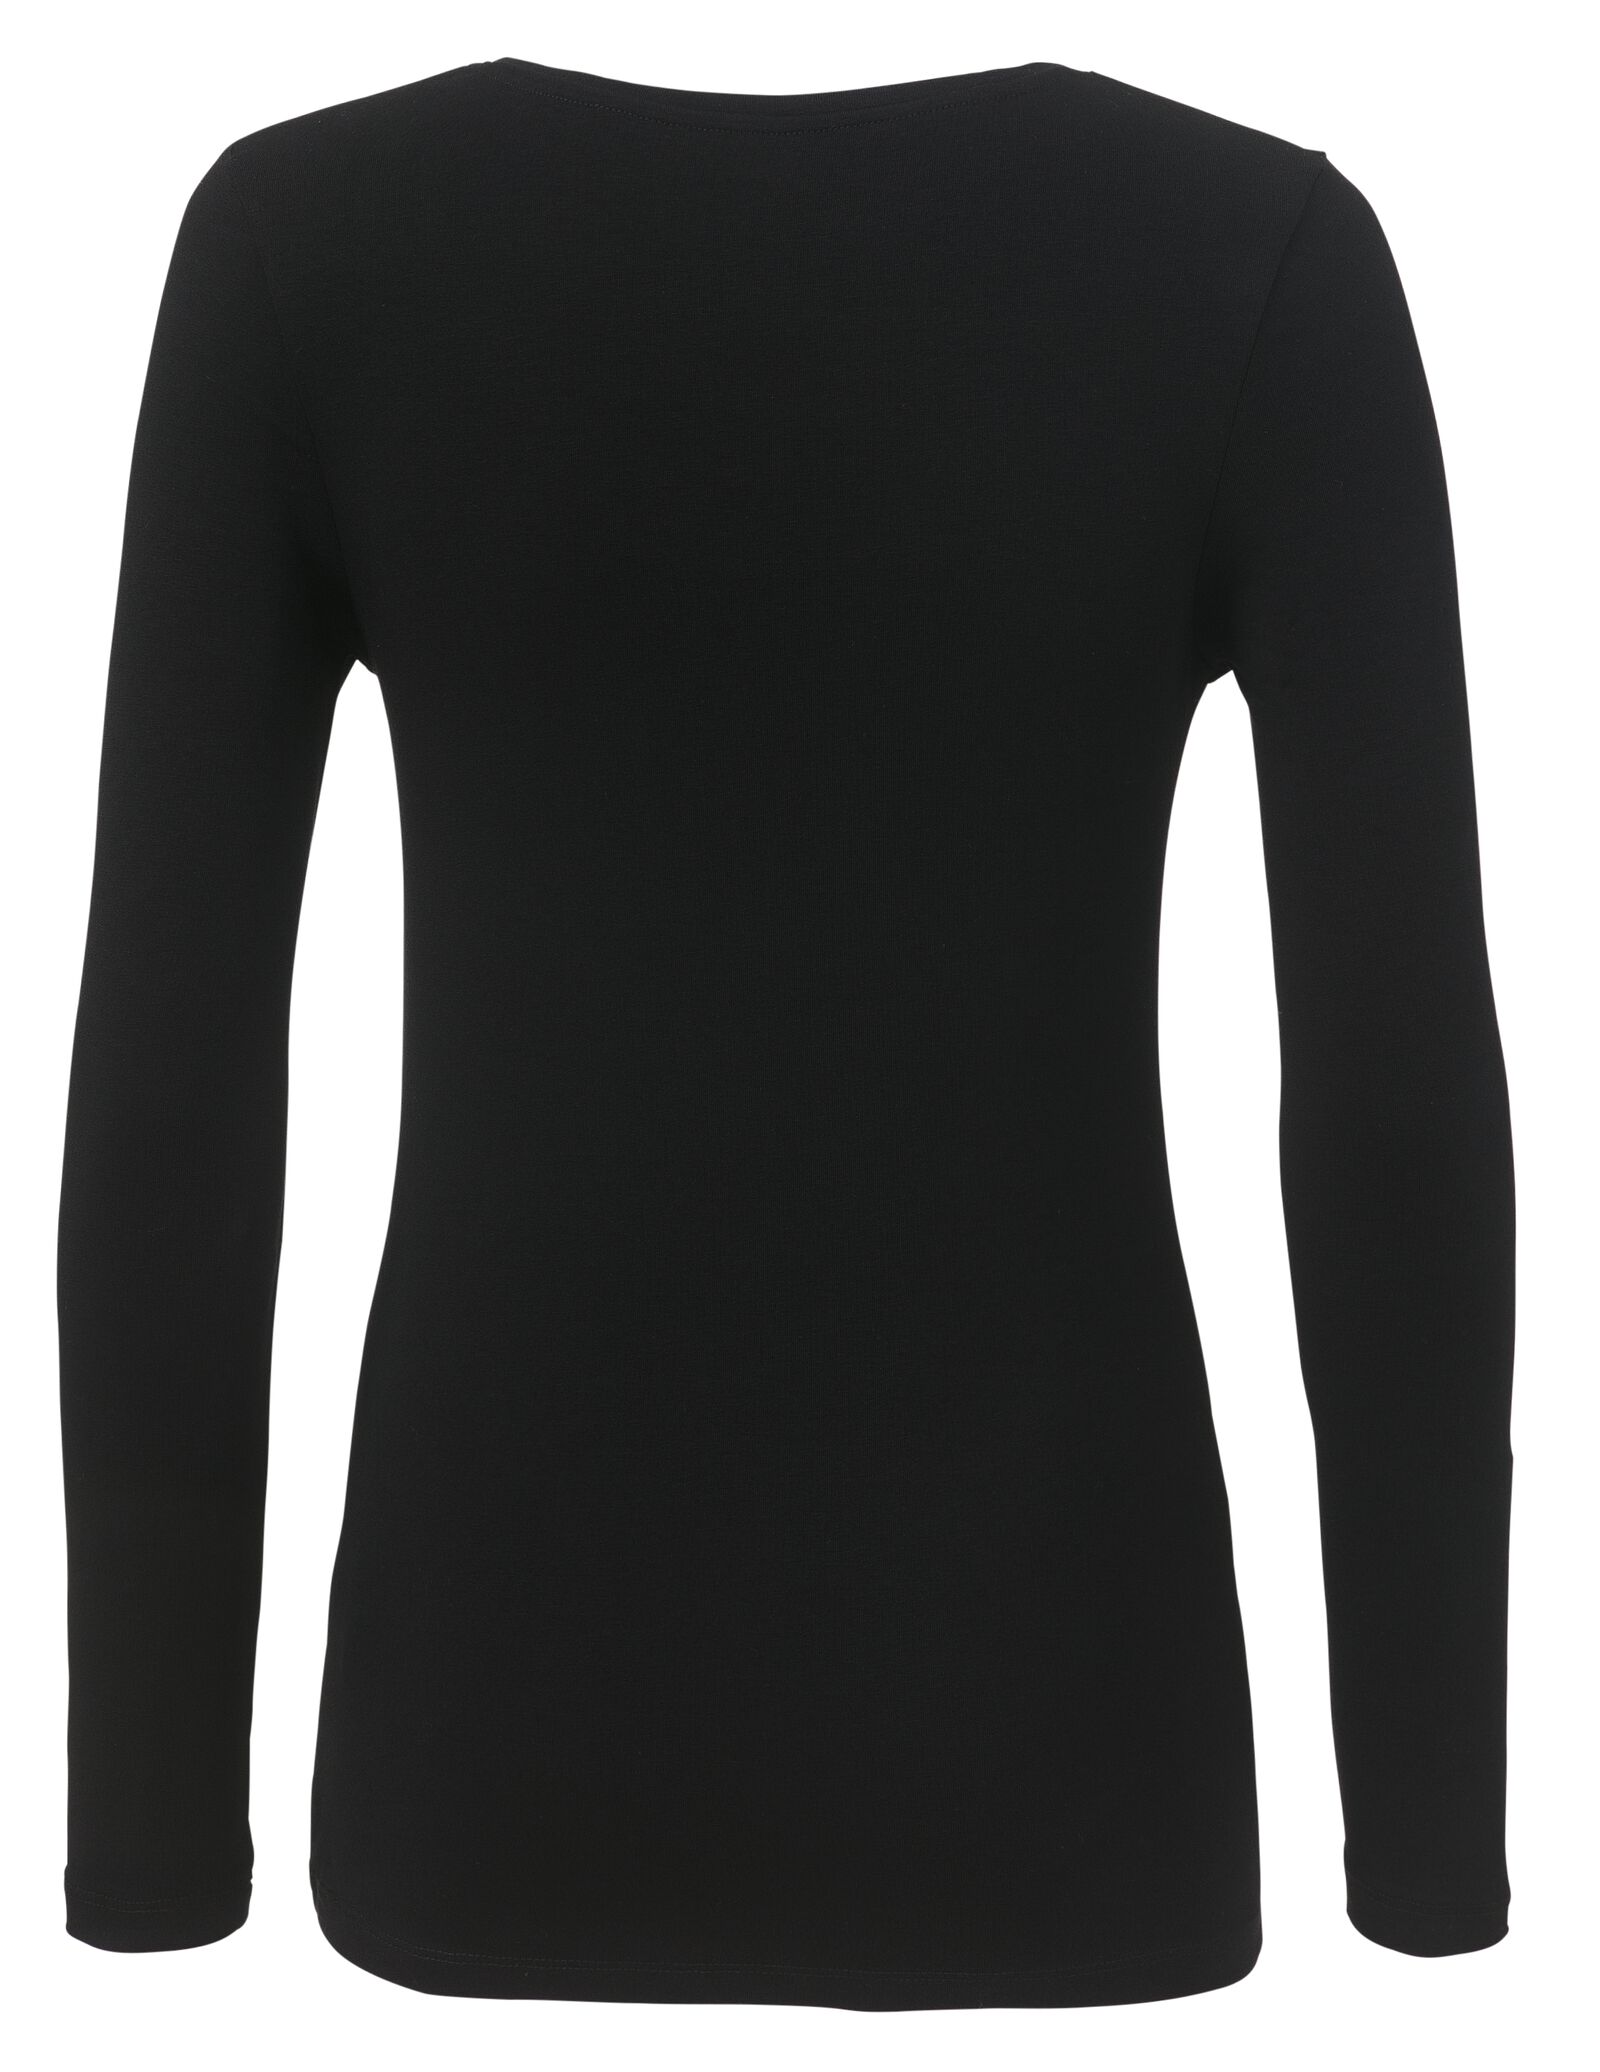 t-shirt femme, coton biologique noir - 1000010400 - HEMA